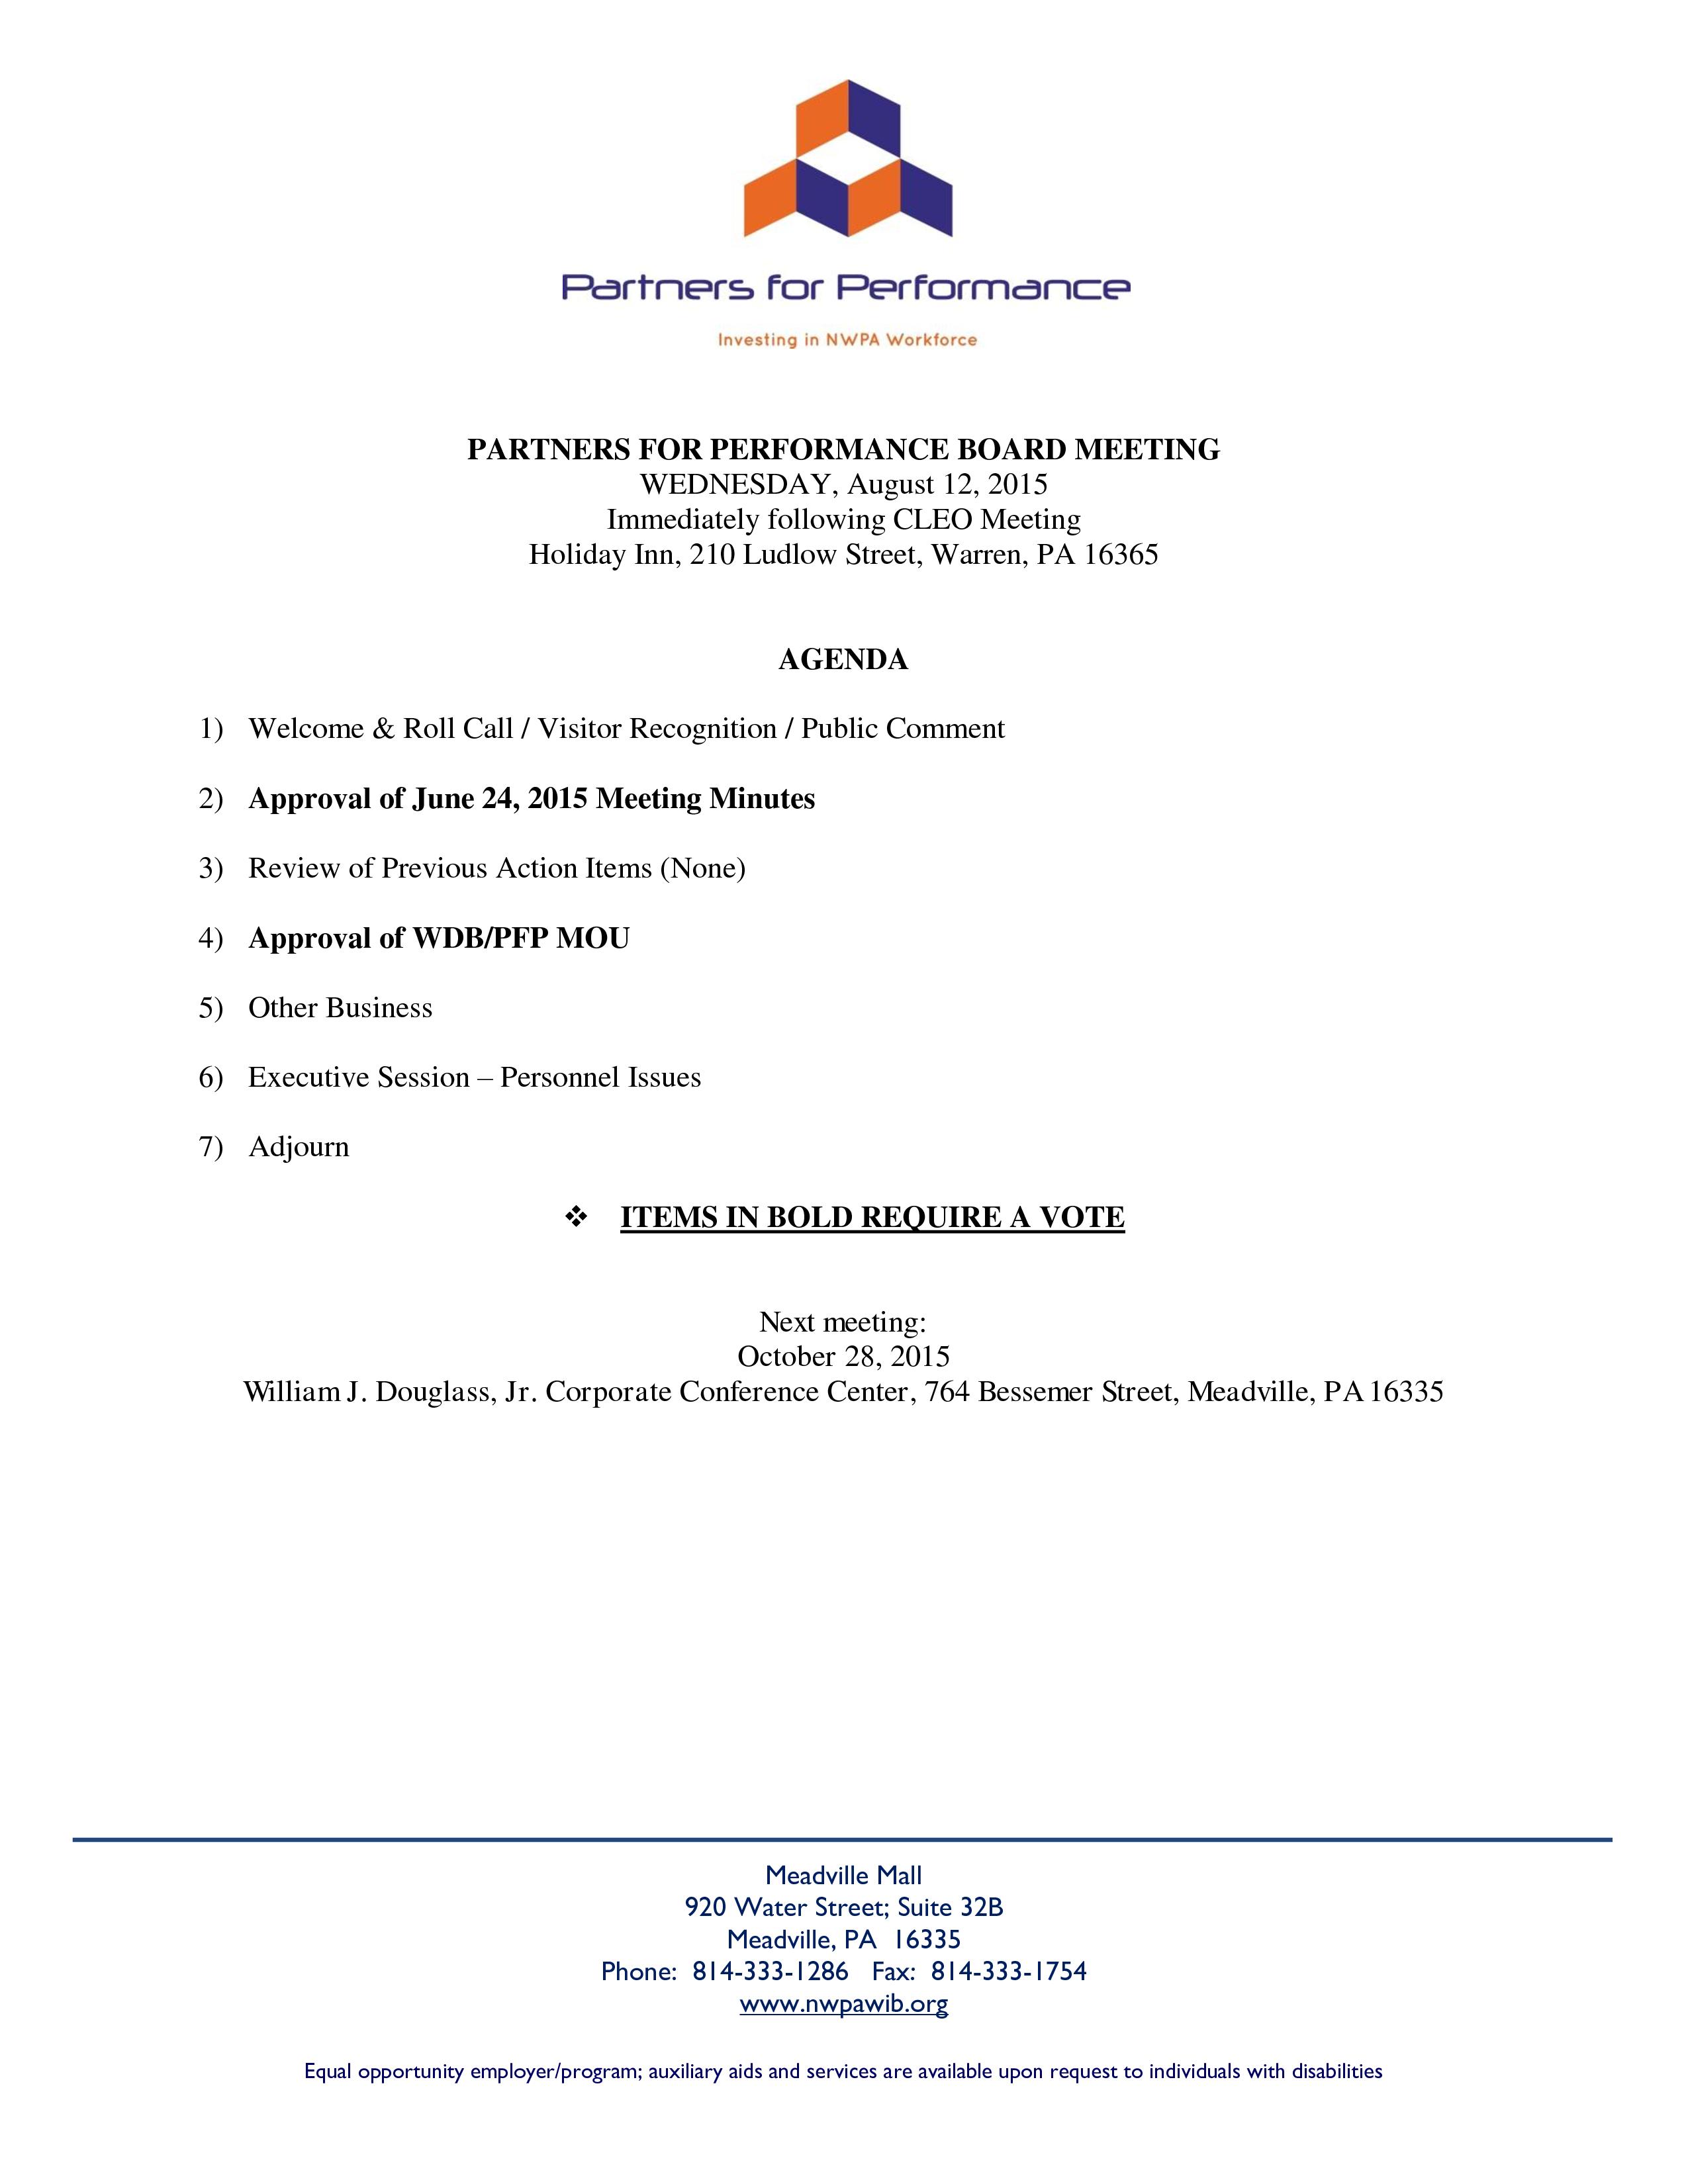 PFP Agenda 08-12-15